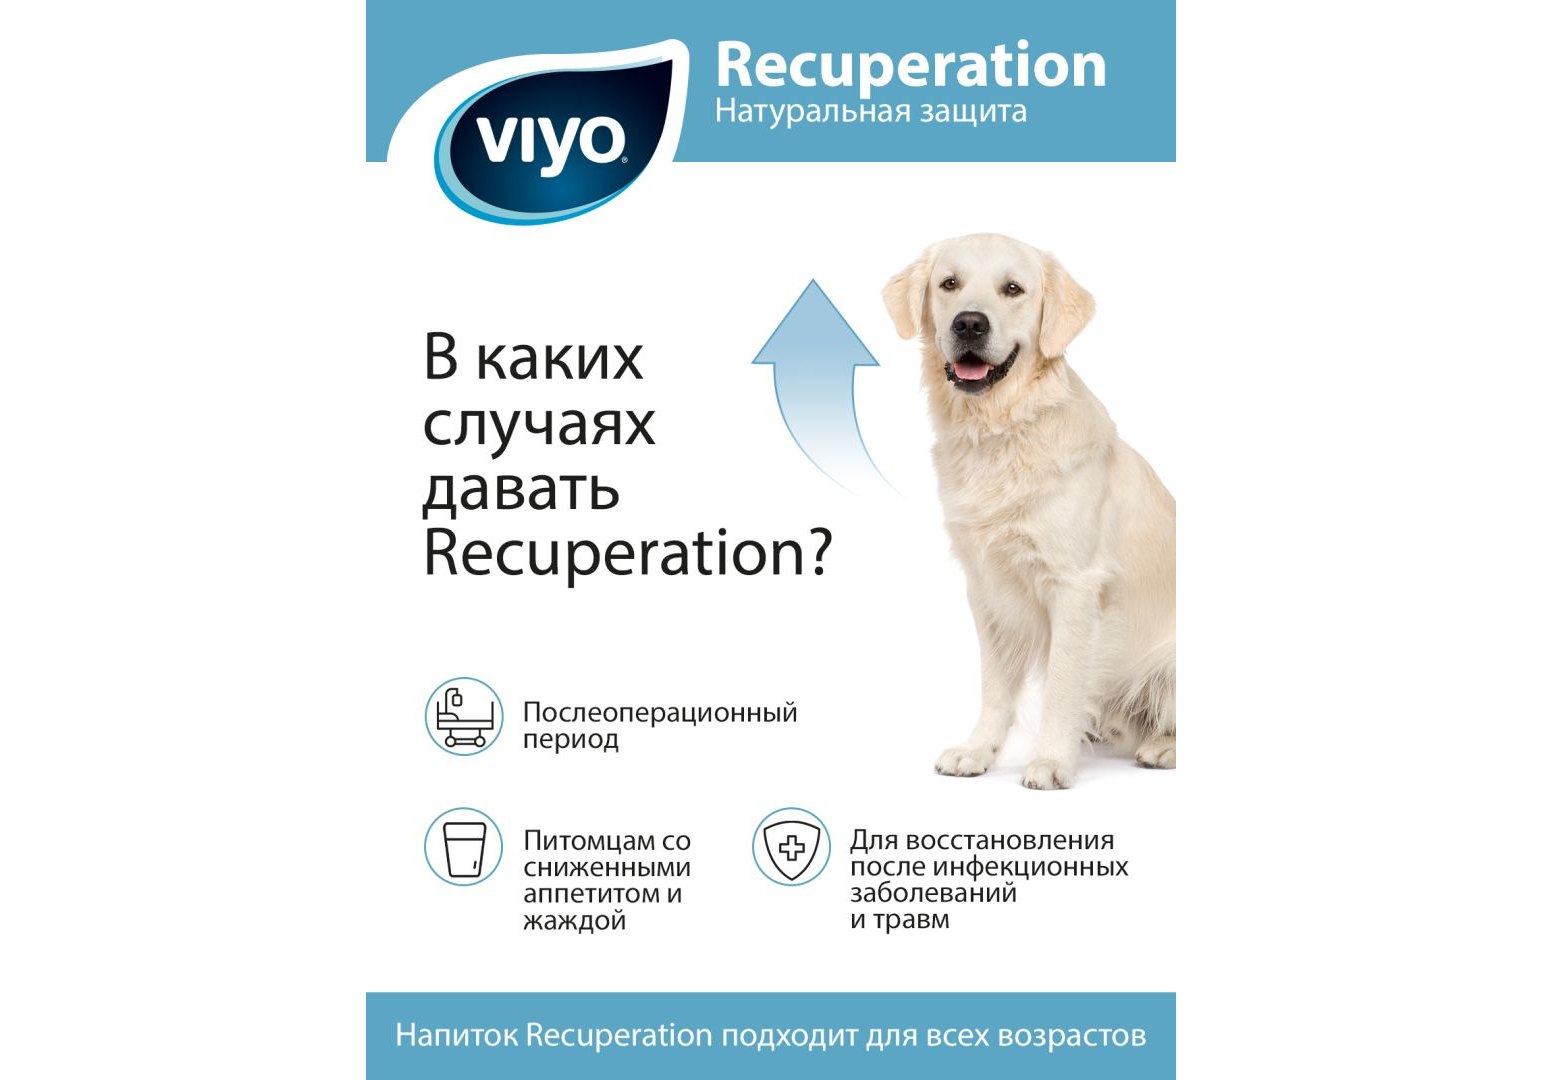 VIYO Recuperation / Питательный напиток Вийо для собак всех возрастов 150  мл купить в Москве по низкой цене 920₽ | интернет-магазин ZooMag.ru